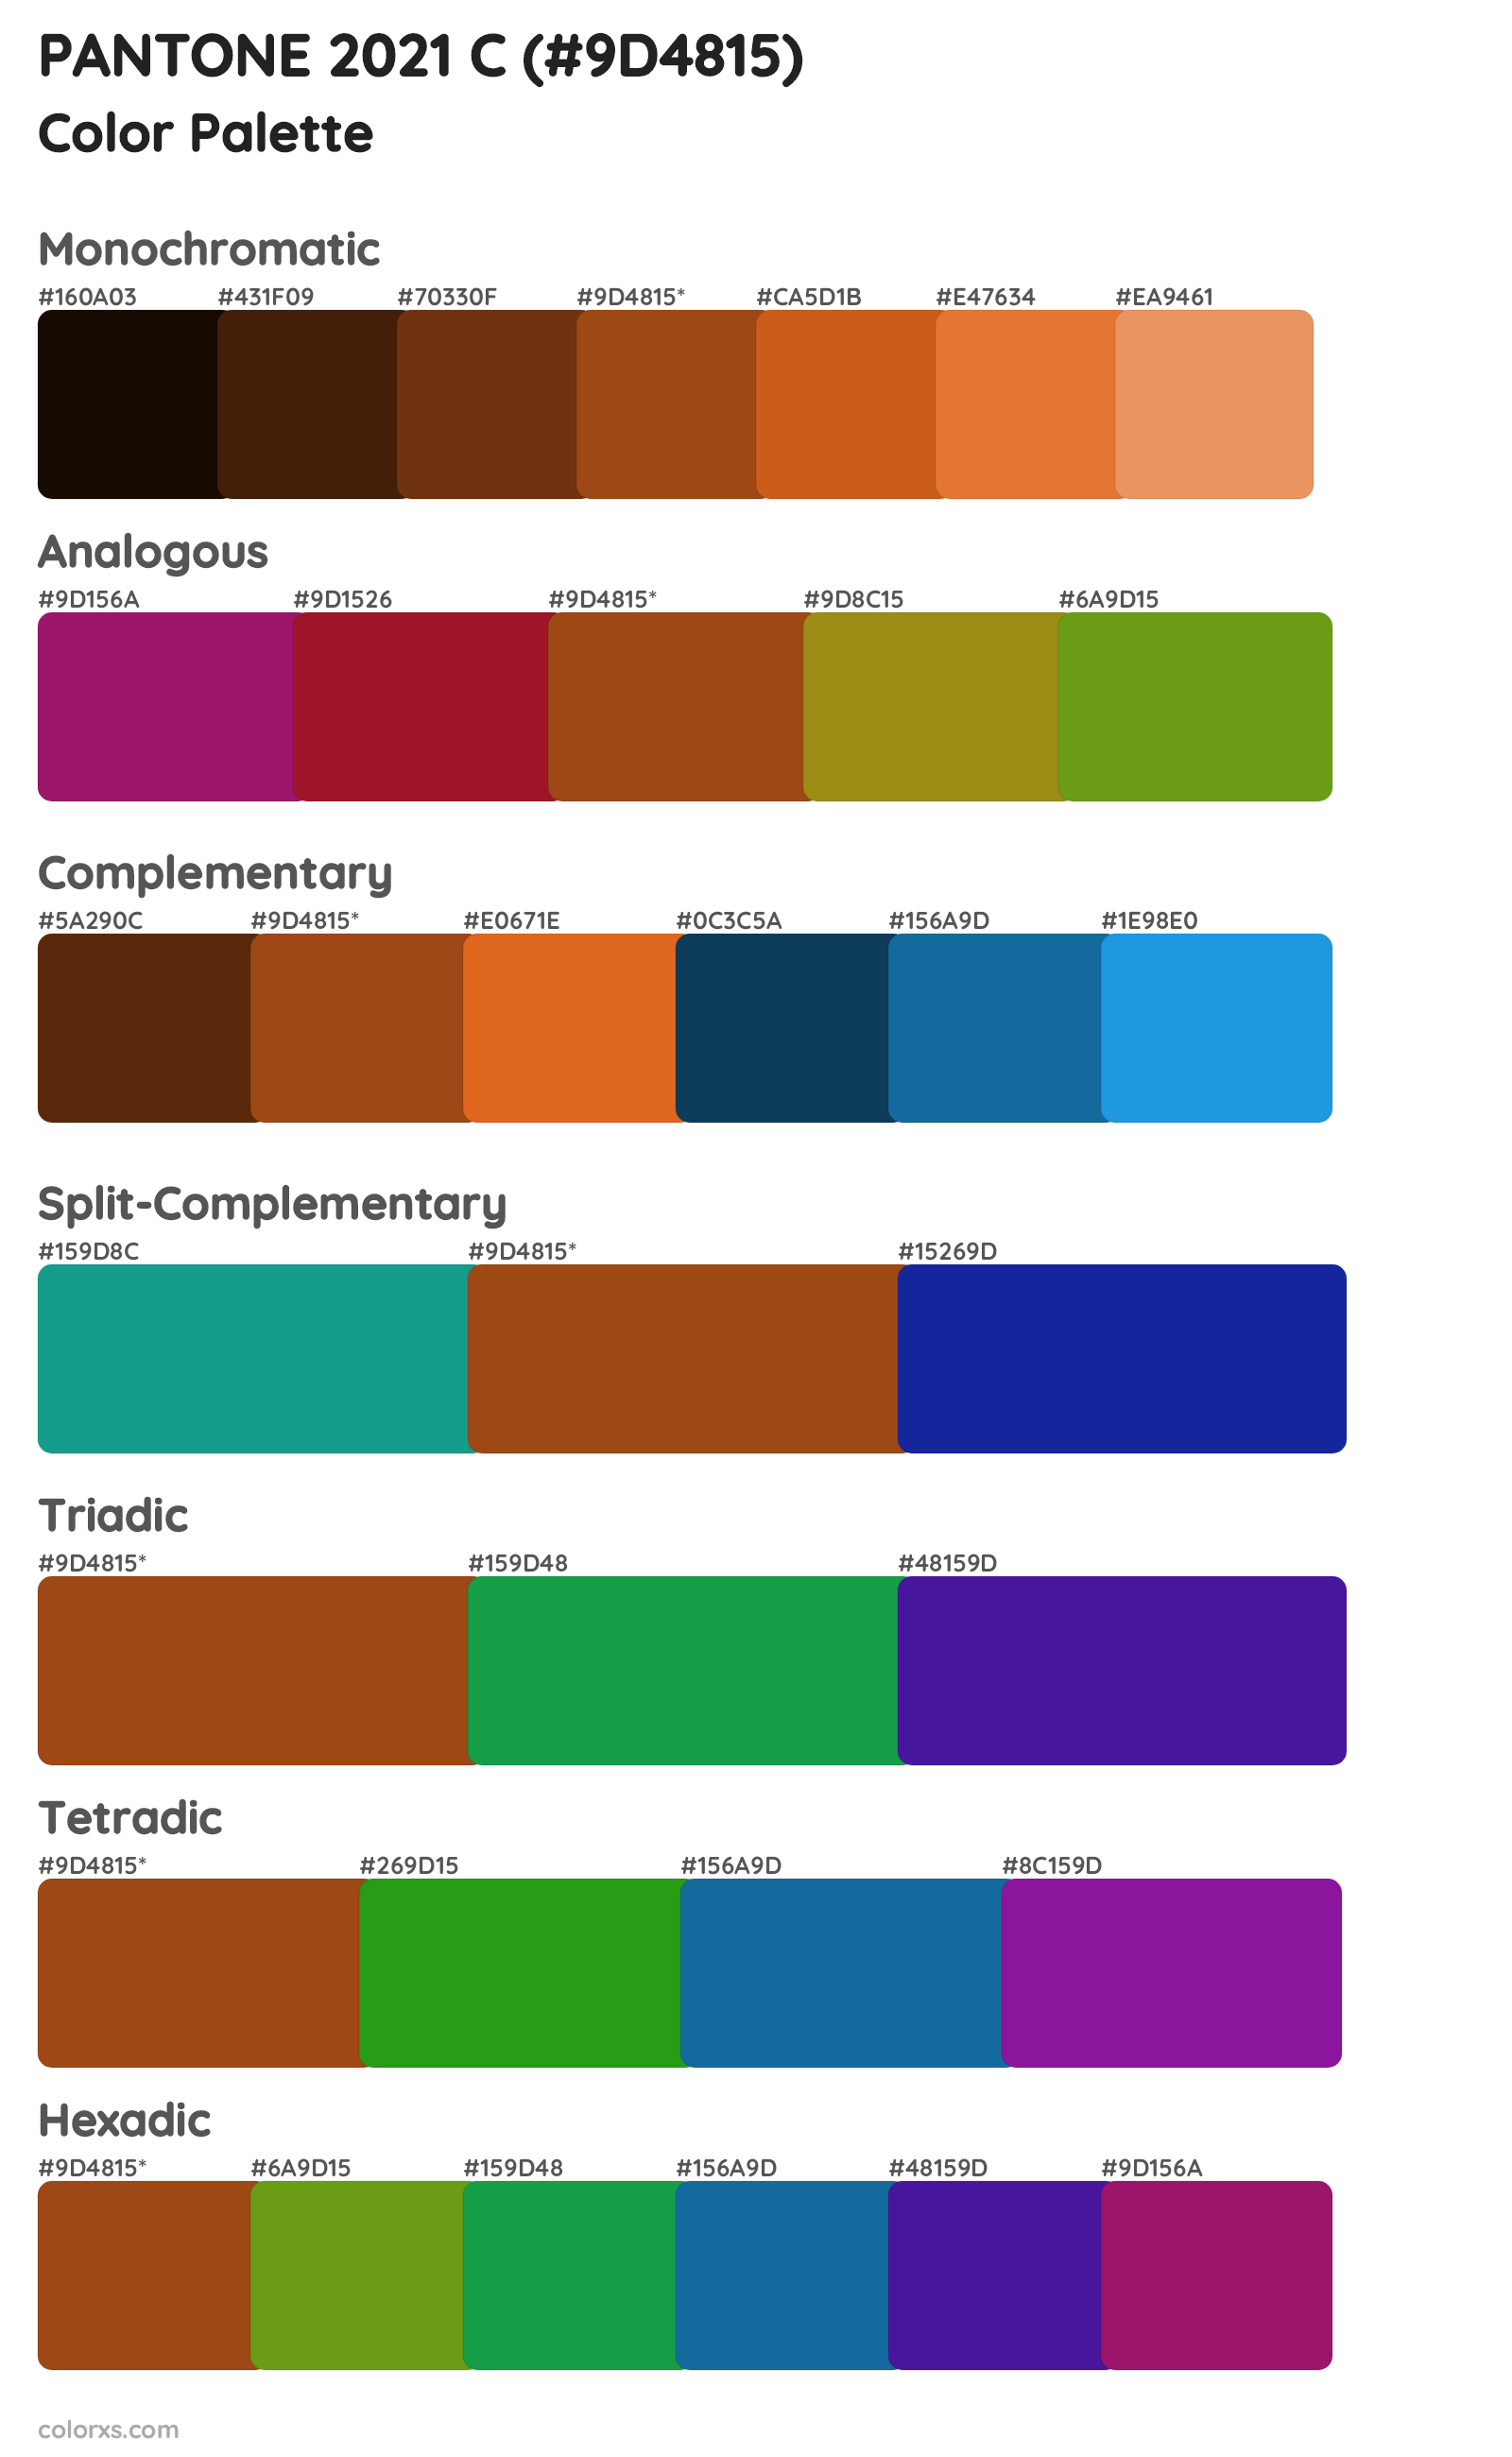 PANTONE 2021 C Color Scheme Palettes